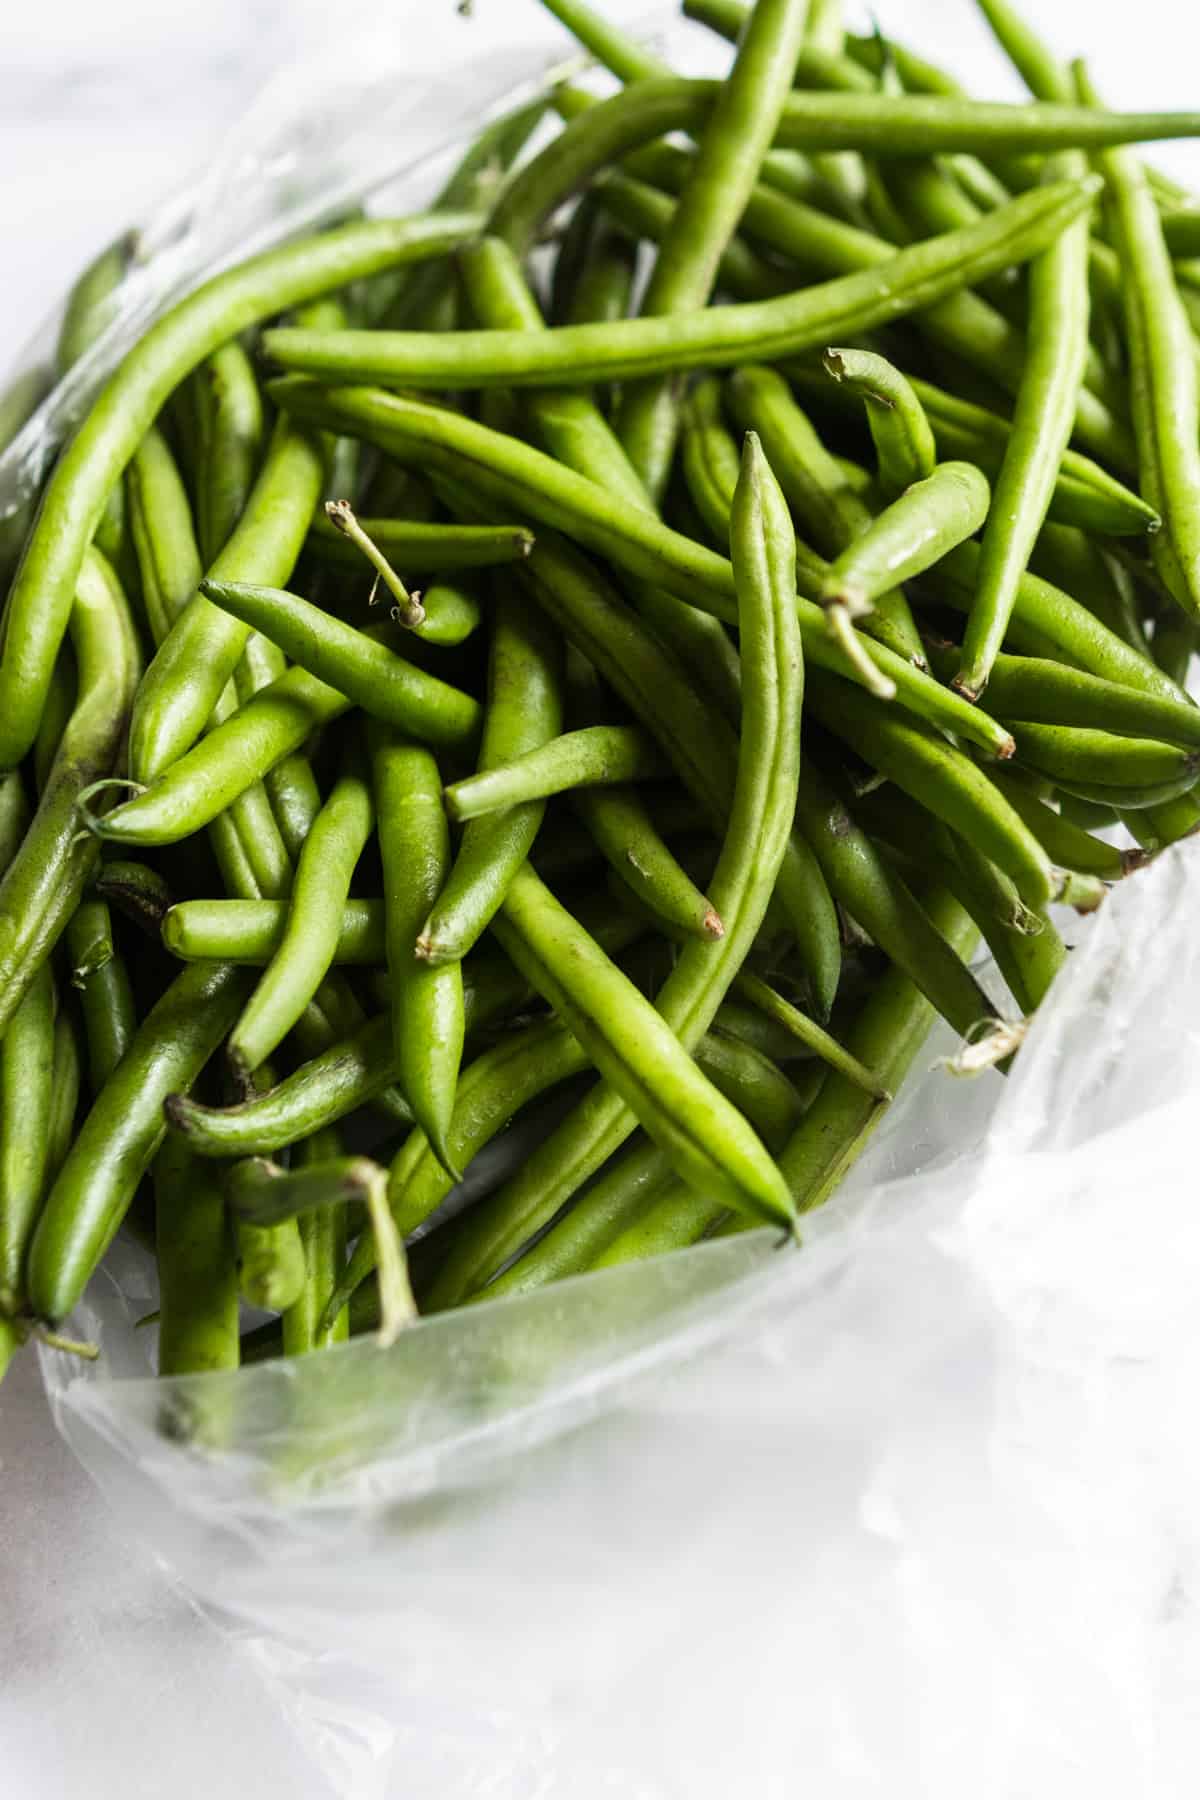 Fresh green beans in plastic bag.